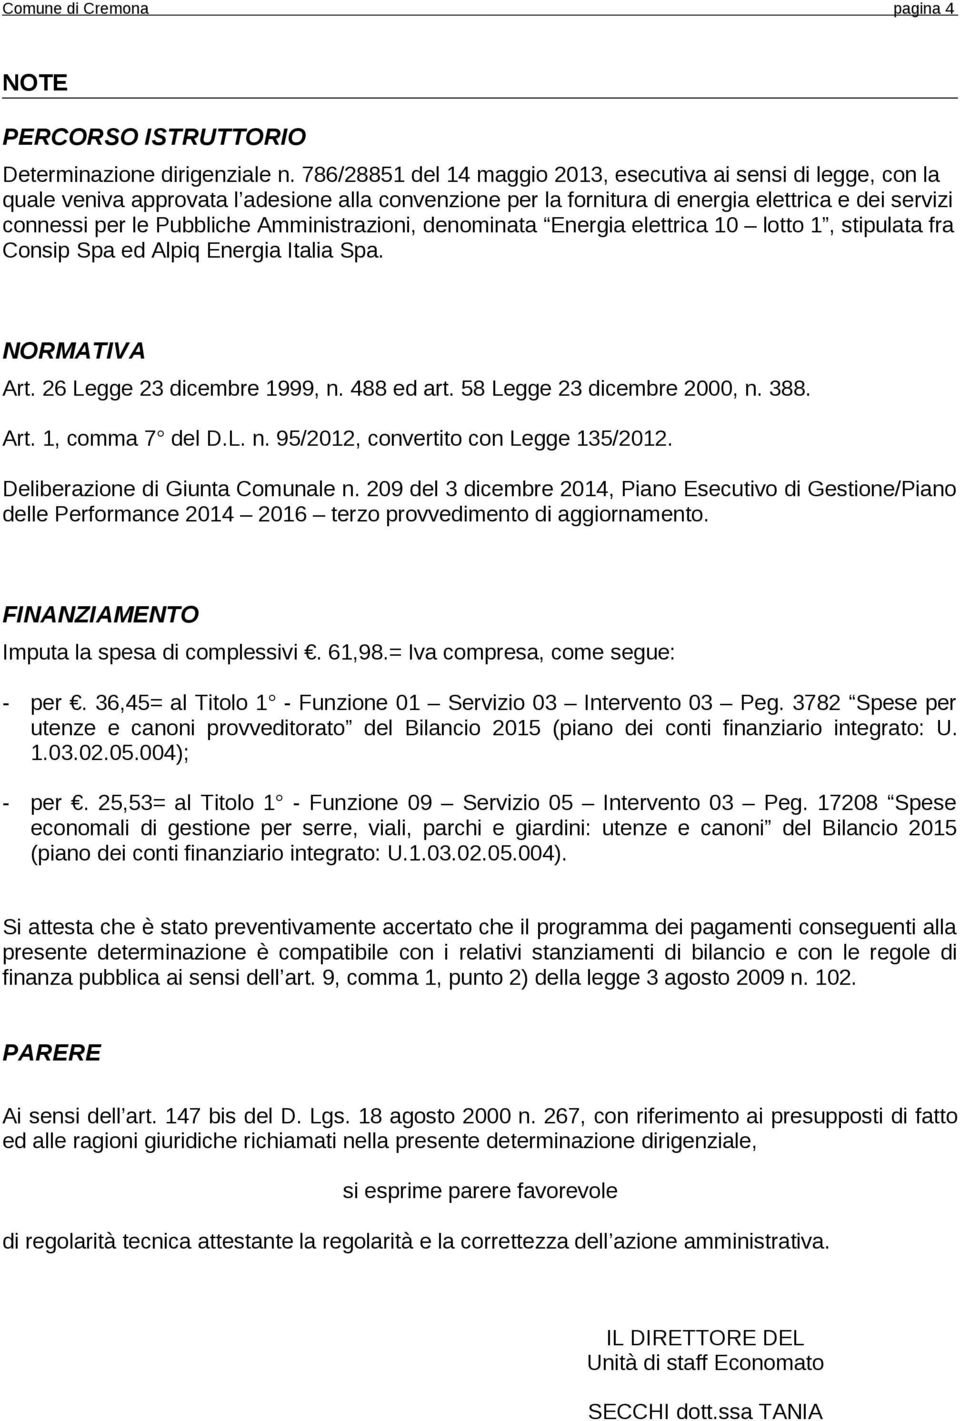 Amministrazioni, denominata Energia elettrica 10 lotto 1, stipulata fra Consip Spa ed Alpiq Energia Italia Spa. NORMATIVA Art. 26 Legge 23 dicembre 1999, n. 488 ed art. 58 Legge 23 dicembre 2000, n.